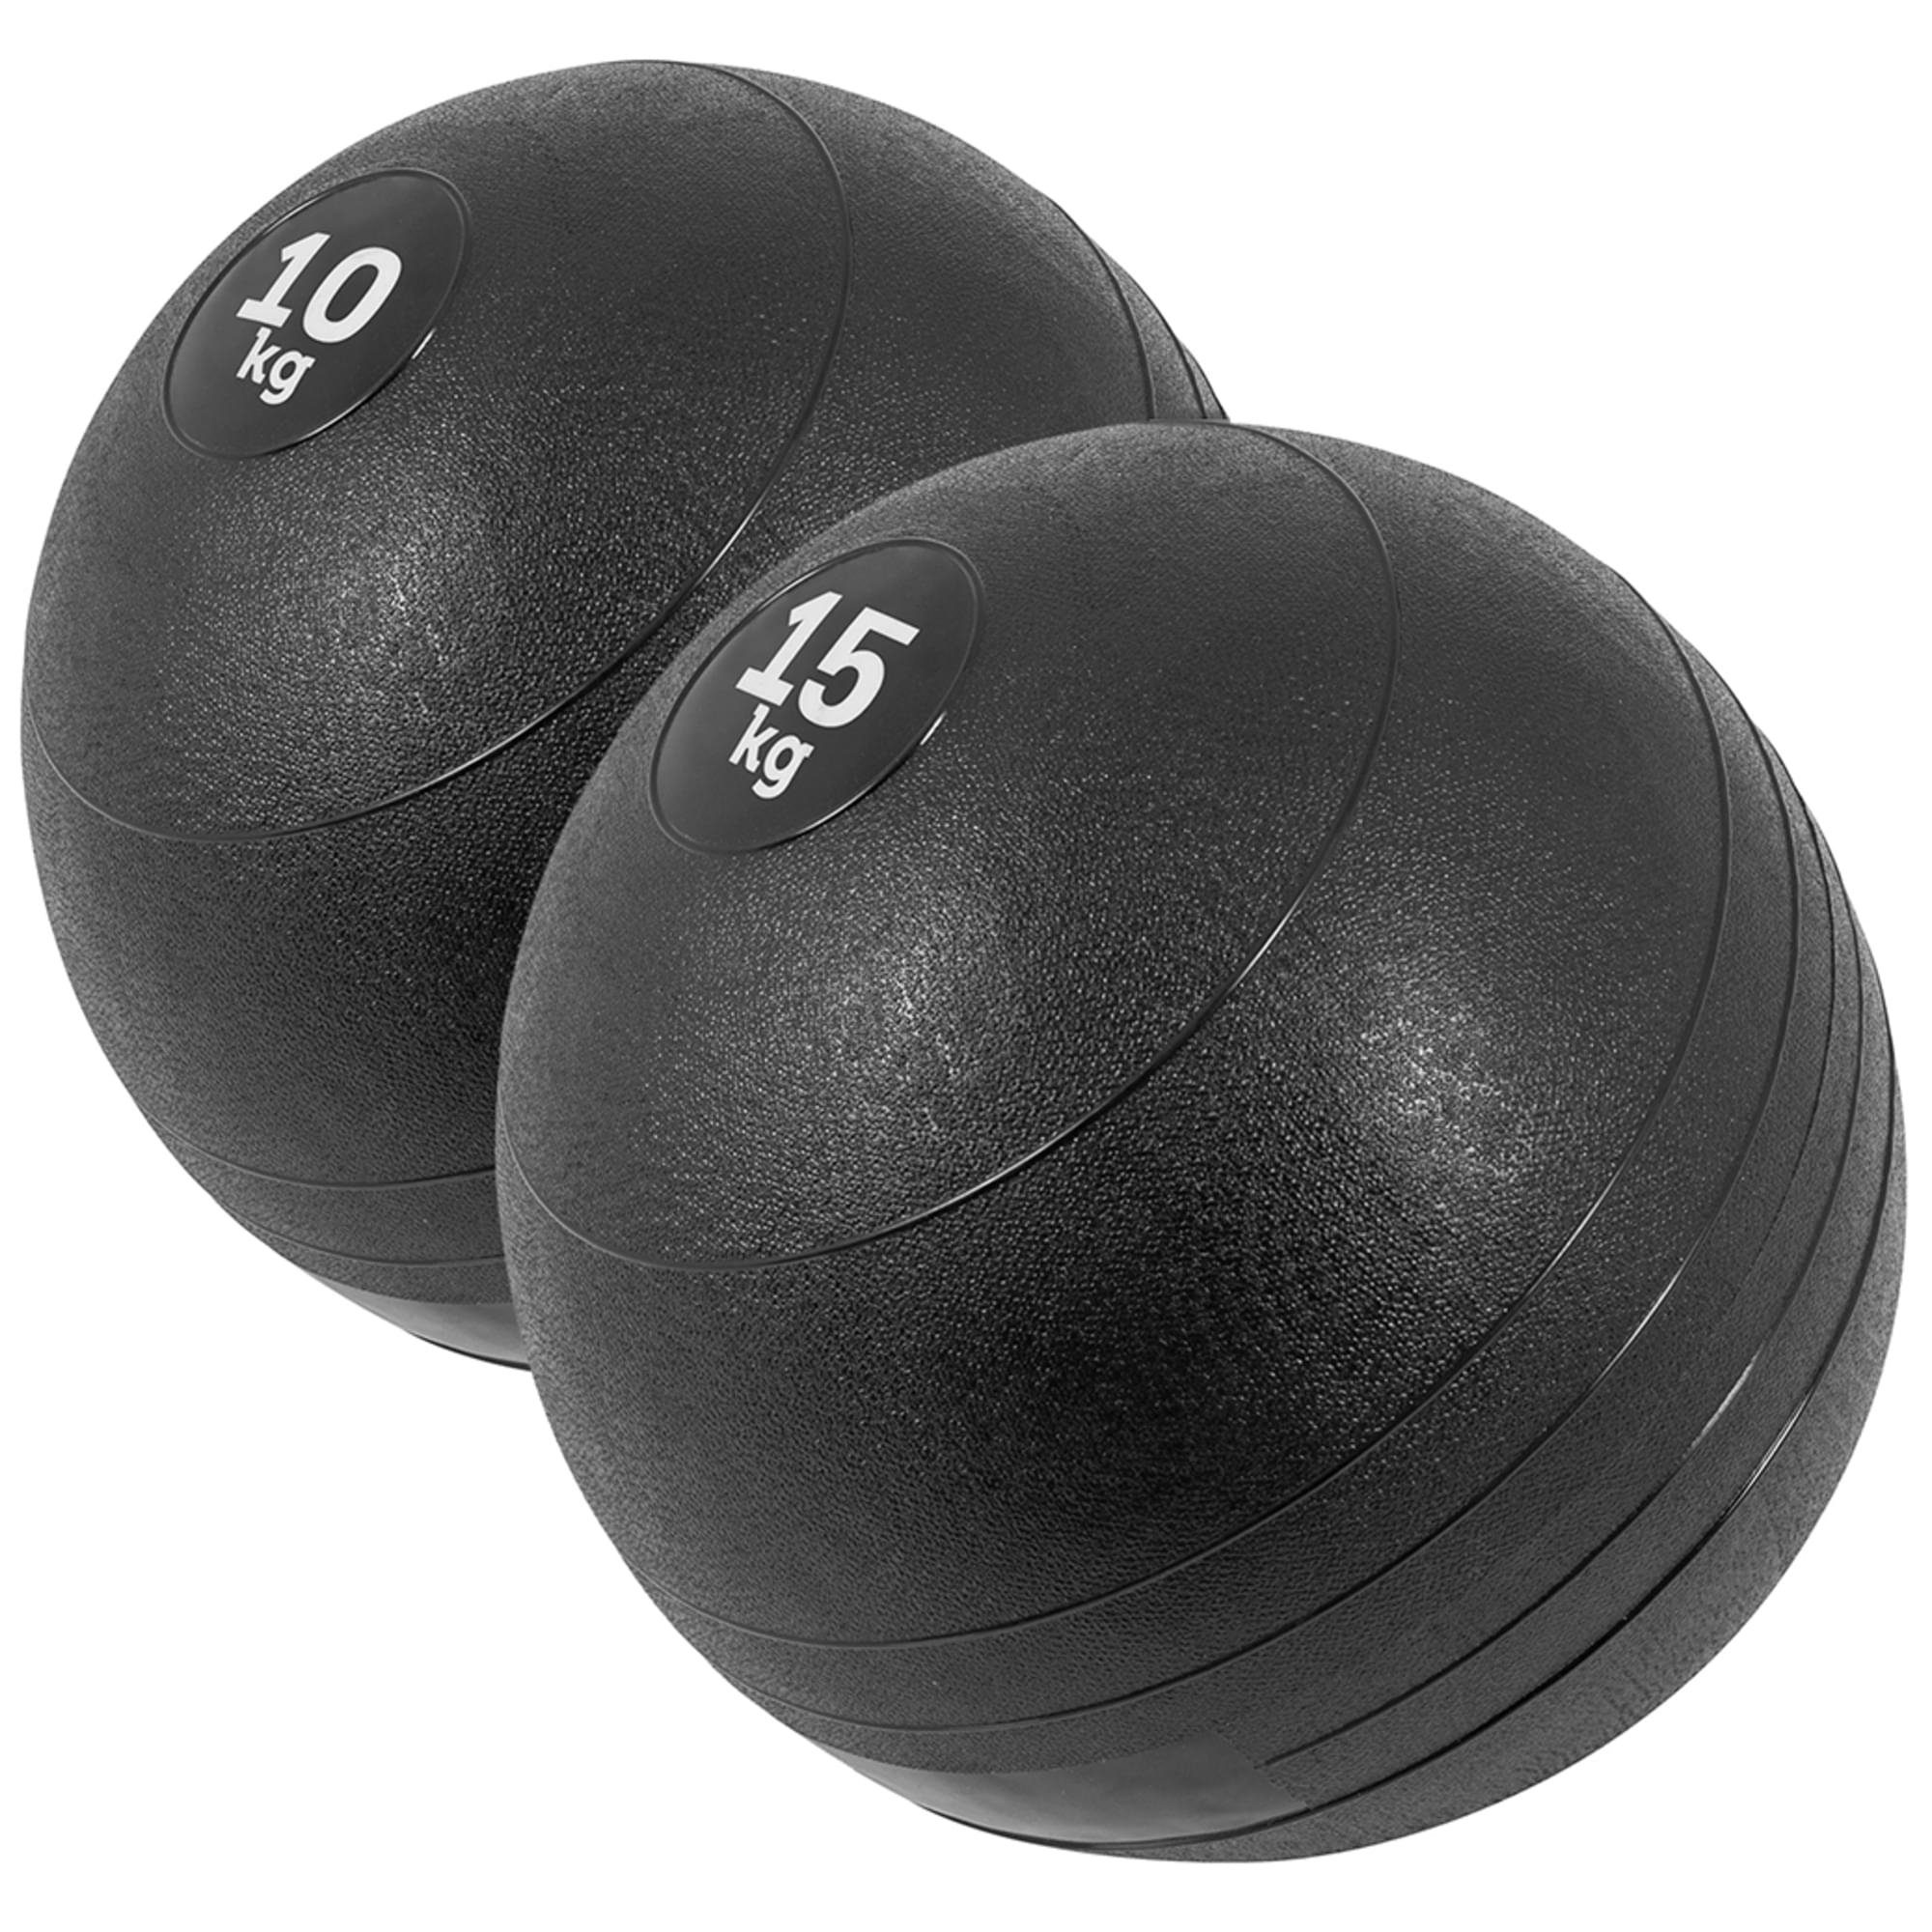 Medizinball SPORTS 10kg, Oberfläche Einzeln/Set, GORILLA 7kg, 25kg 15kg, 3kg, mit 20kg, Set 5kg, Griffiger